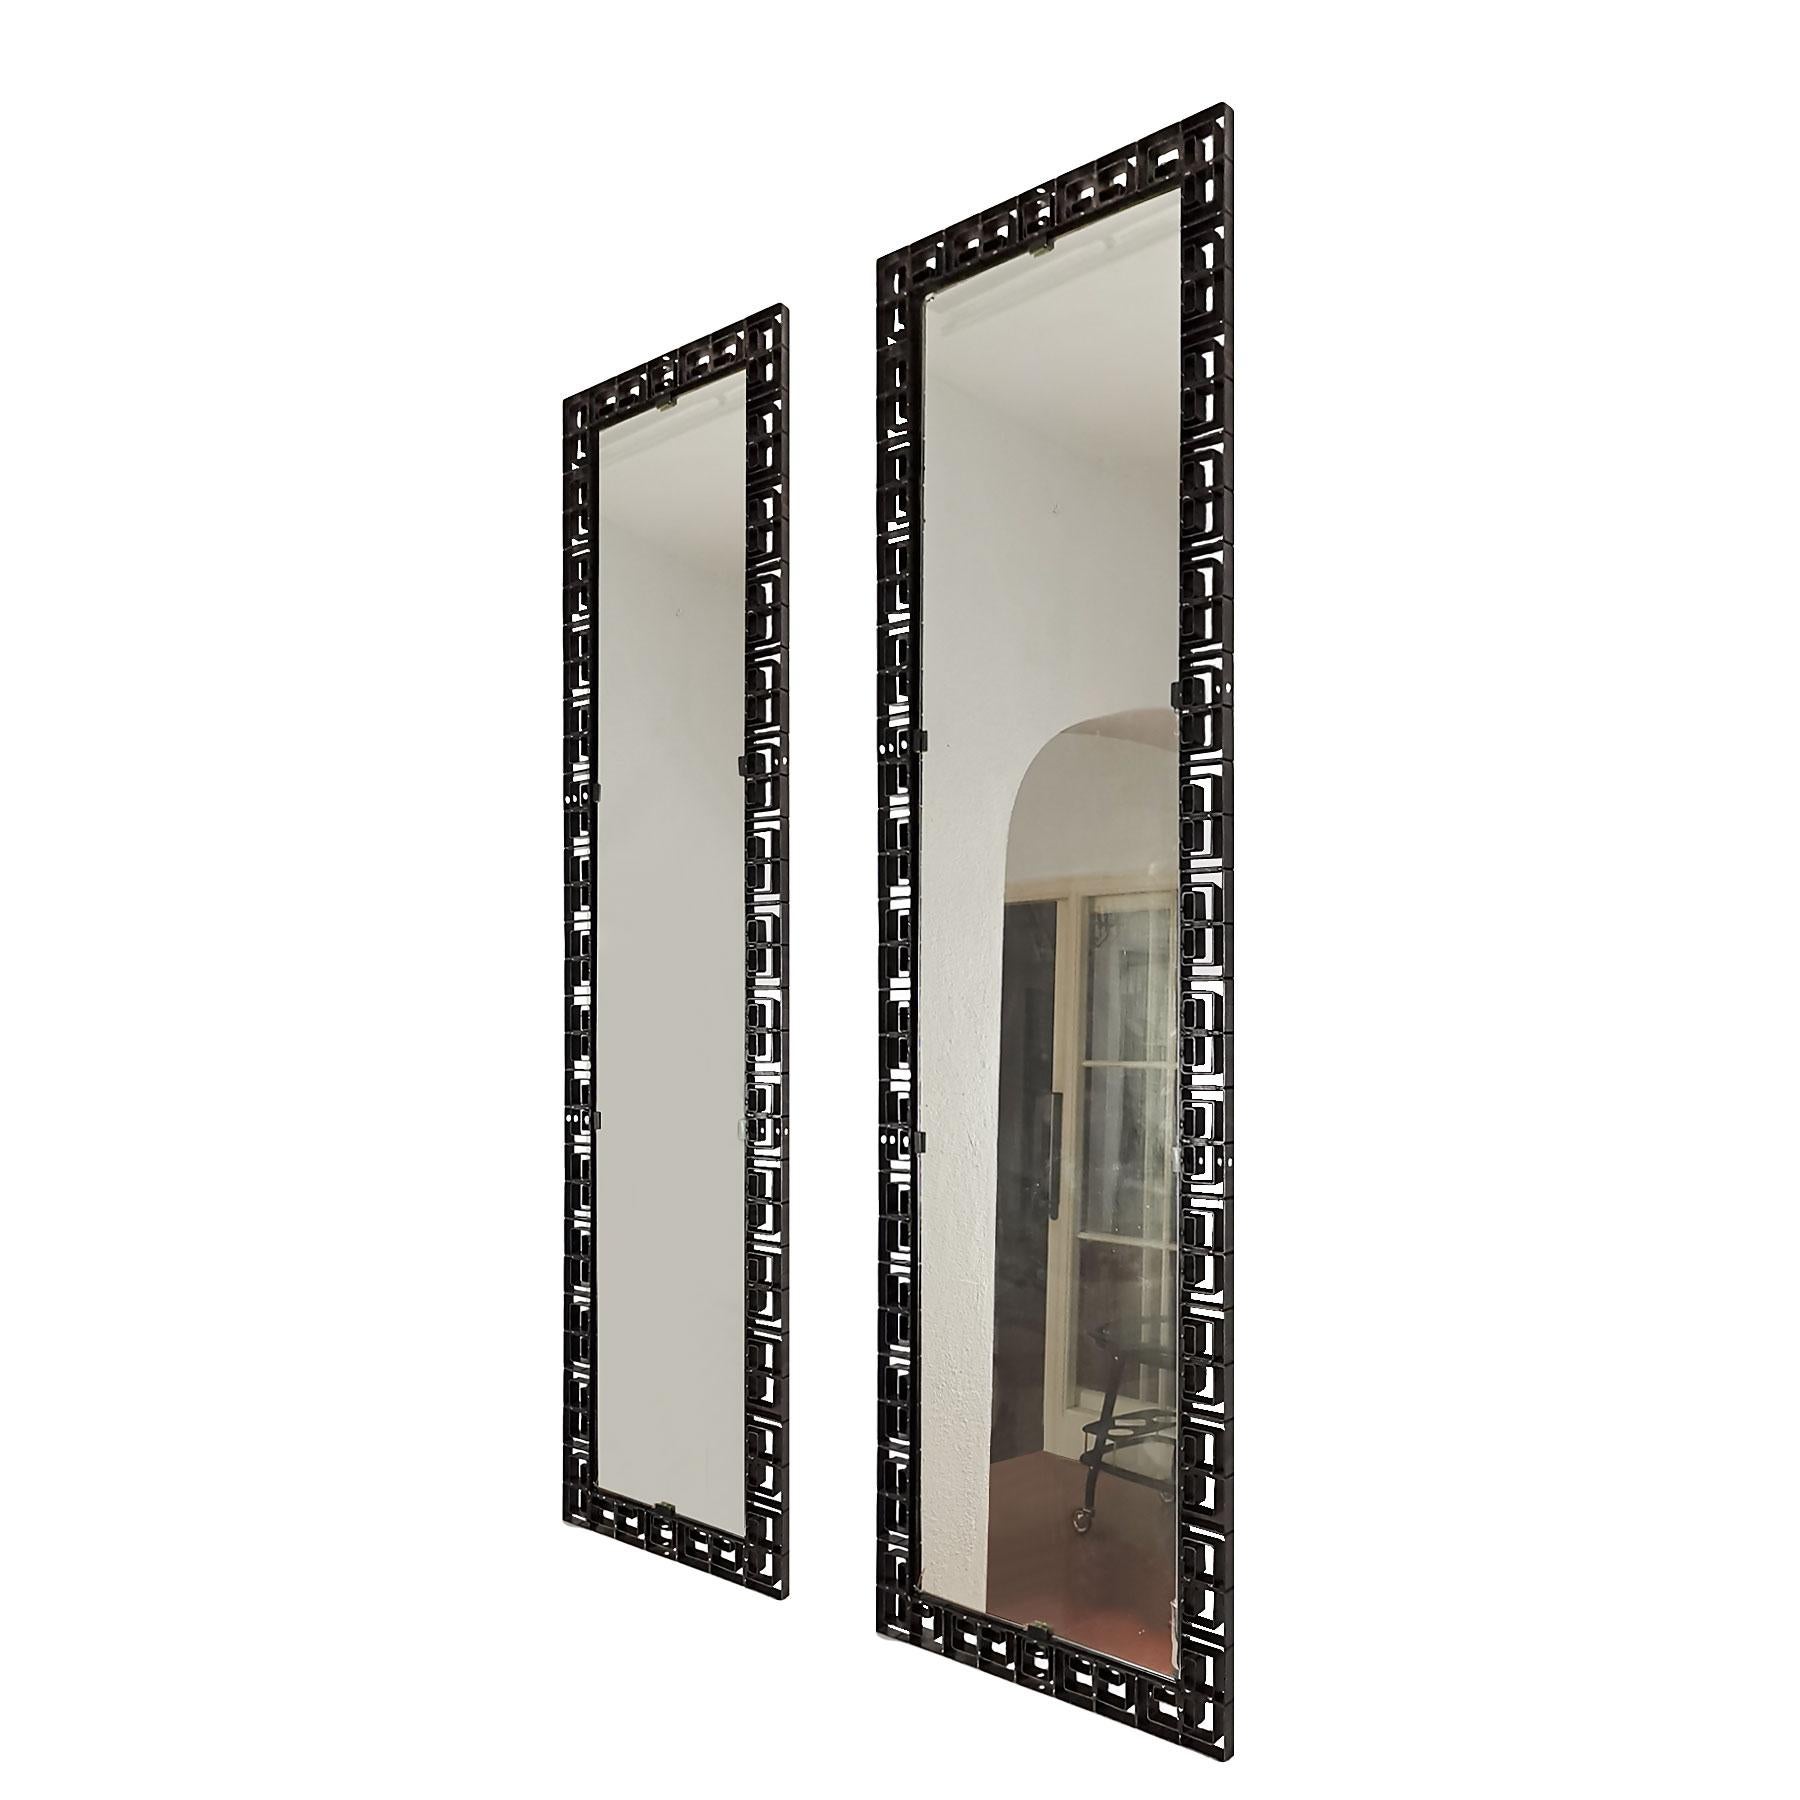 Falsche Paar Spiegel, Schmiedeeisen mit schwarzer Patina Rahmen, ausgezeichnete Qualität. Große mit dem ursprünglichen Spiegel, einige Verluste (Möglichkeit, es zu ändern) und die andere ist eine neue.
Italien, um 1960

Maße: Großer Spiegel 49 x